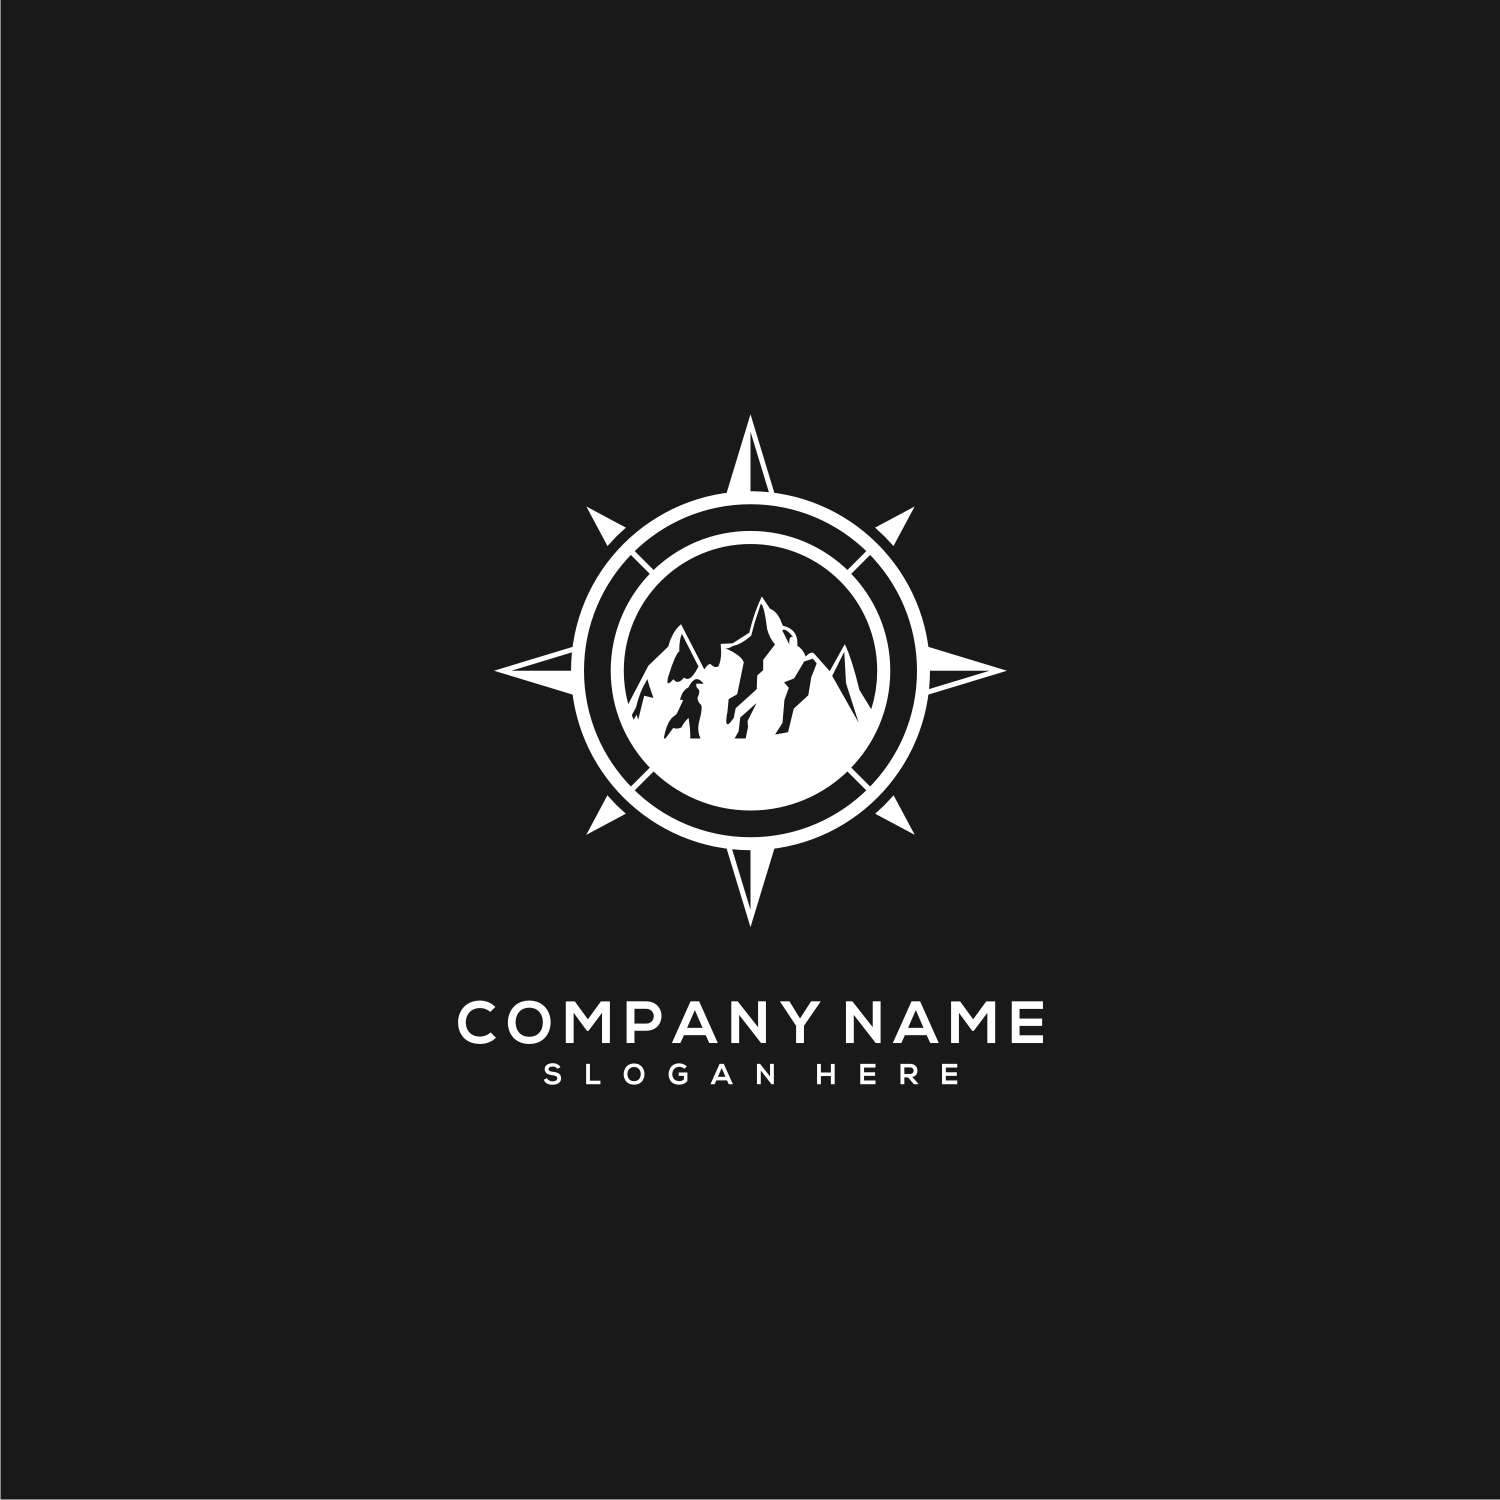 3 Mountain and Compass Concept Logo Designs